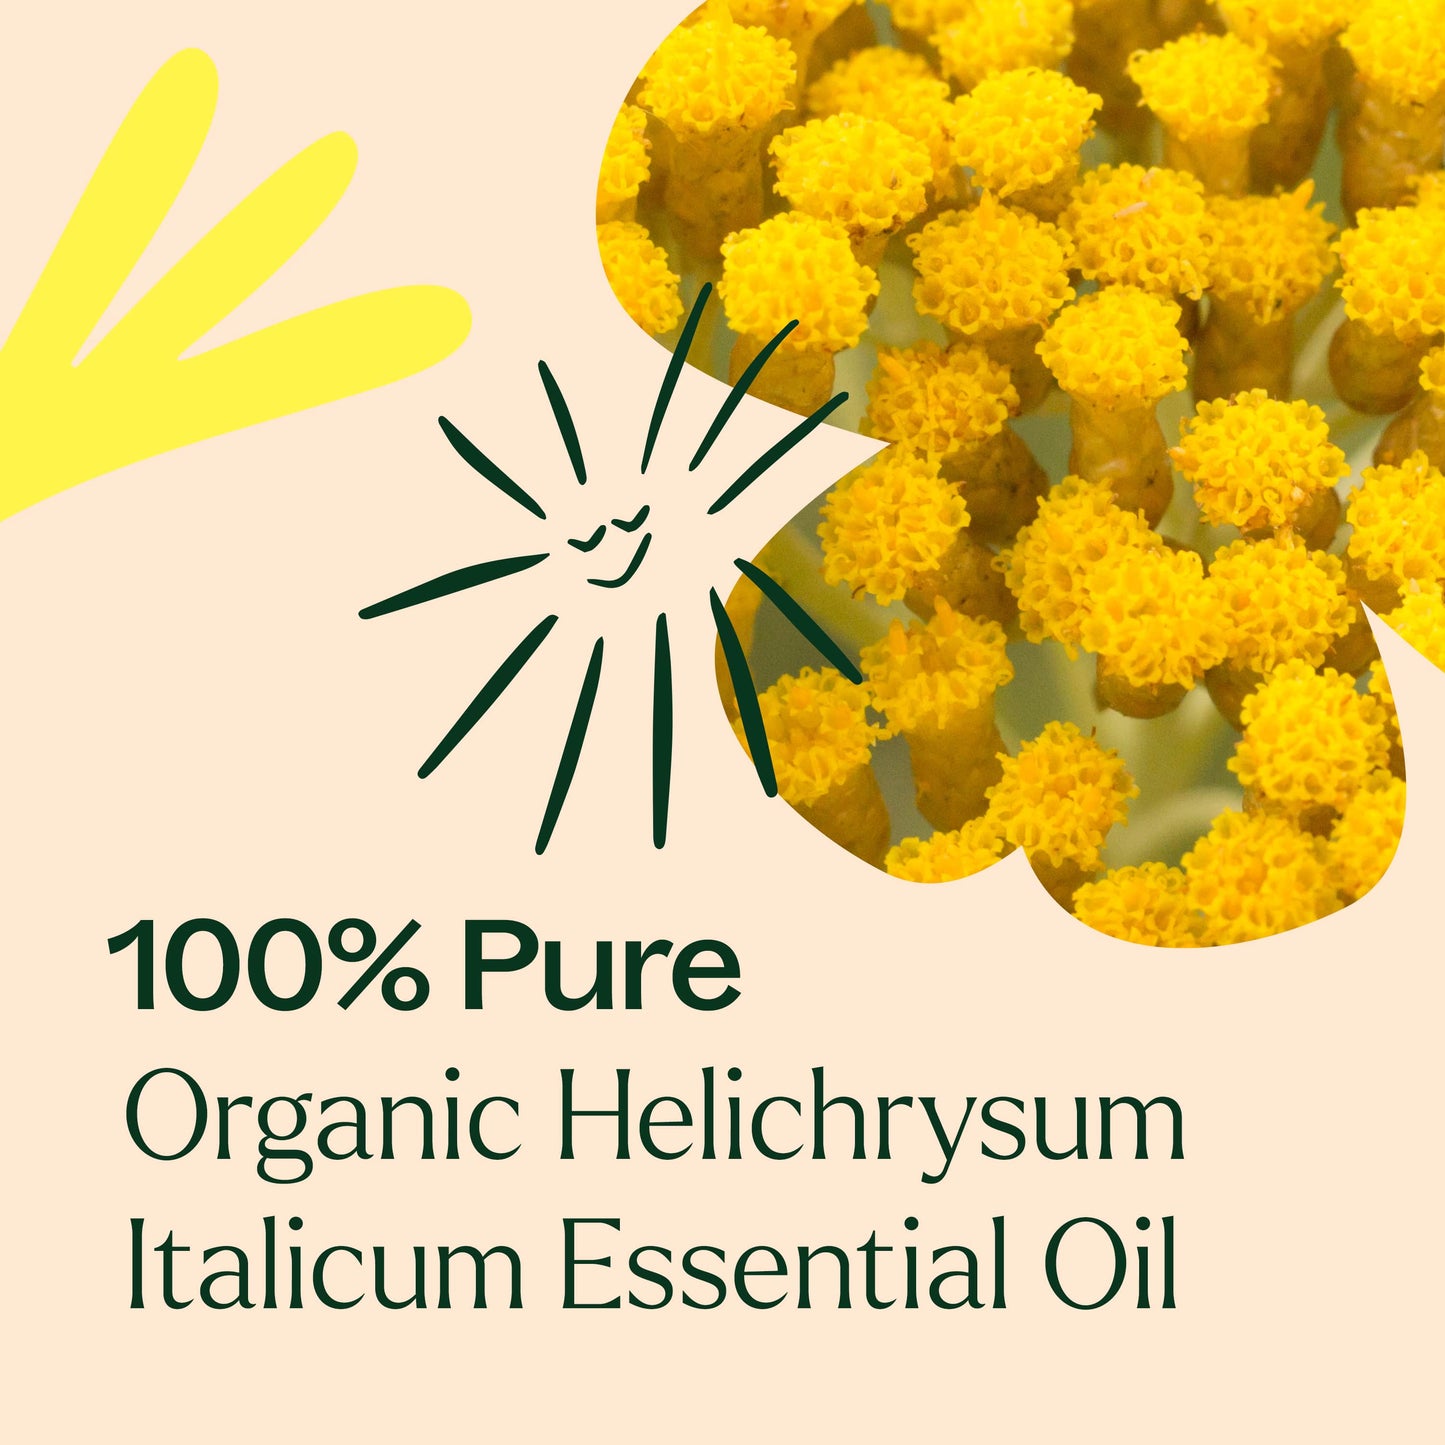 Organic Helichrysum Italicum Essential Oil is 100% pure